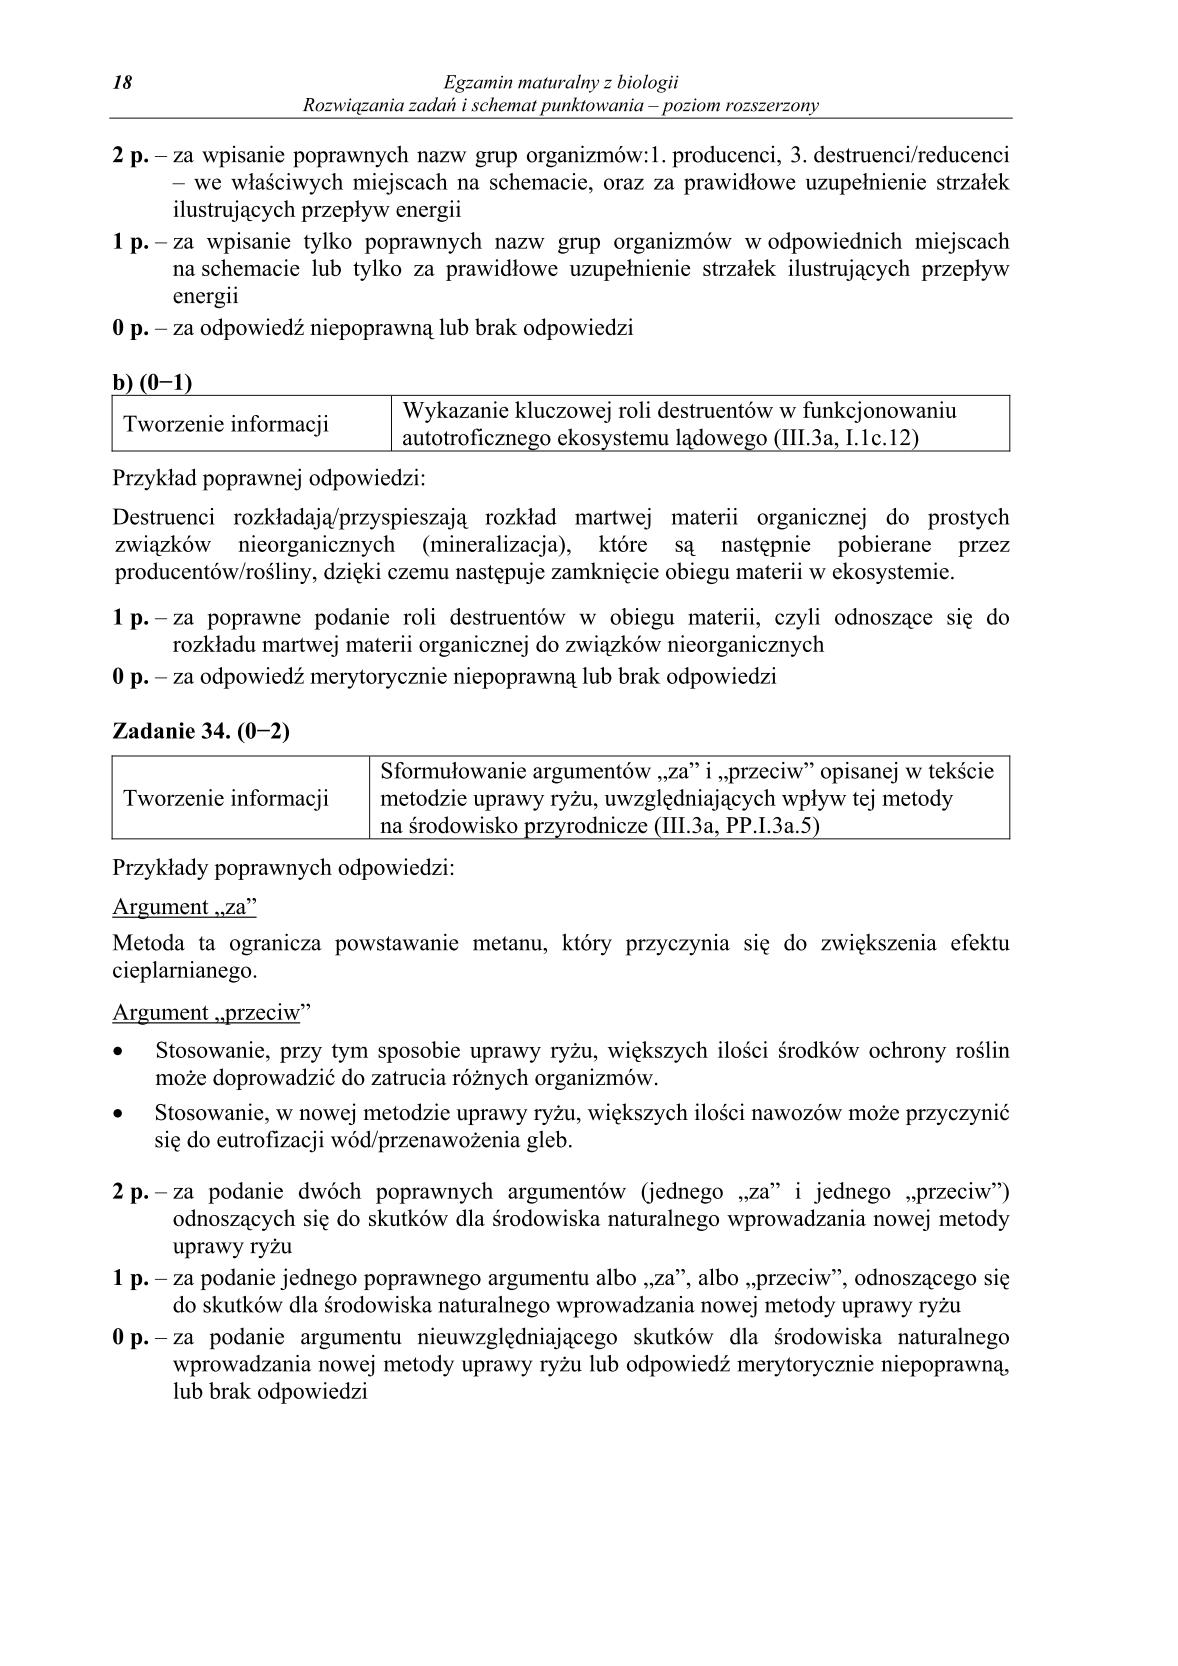 odpowiedzi-biologia-poziom-rozszerzony-matura-2014-str.18